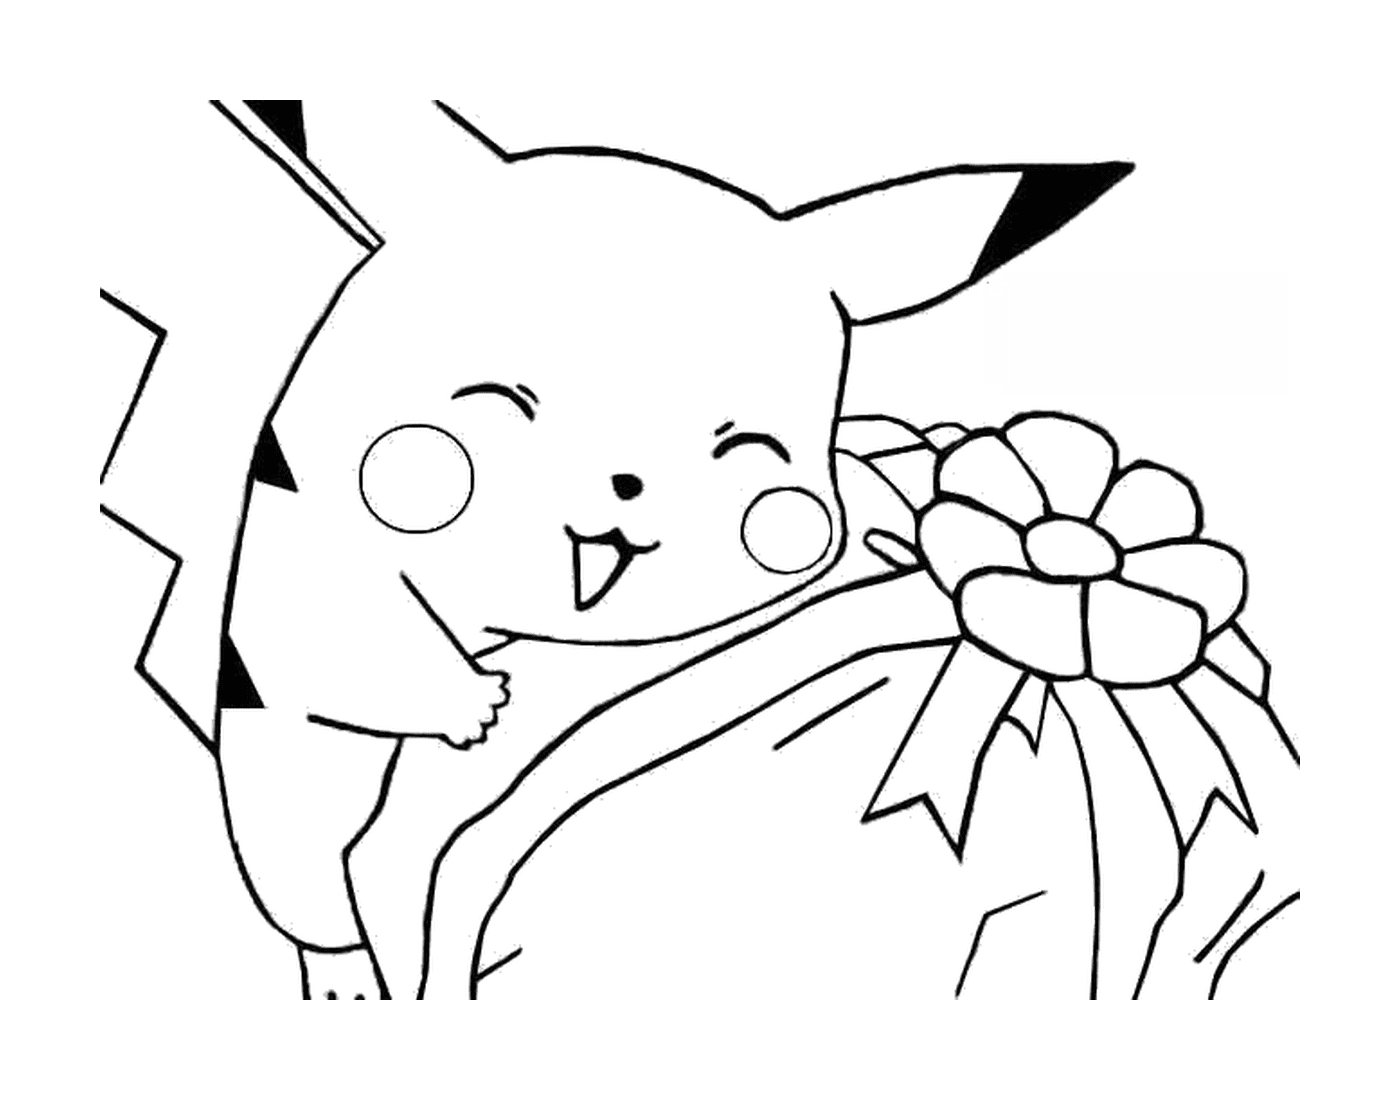  Pikachu com uma flor 